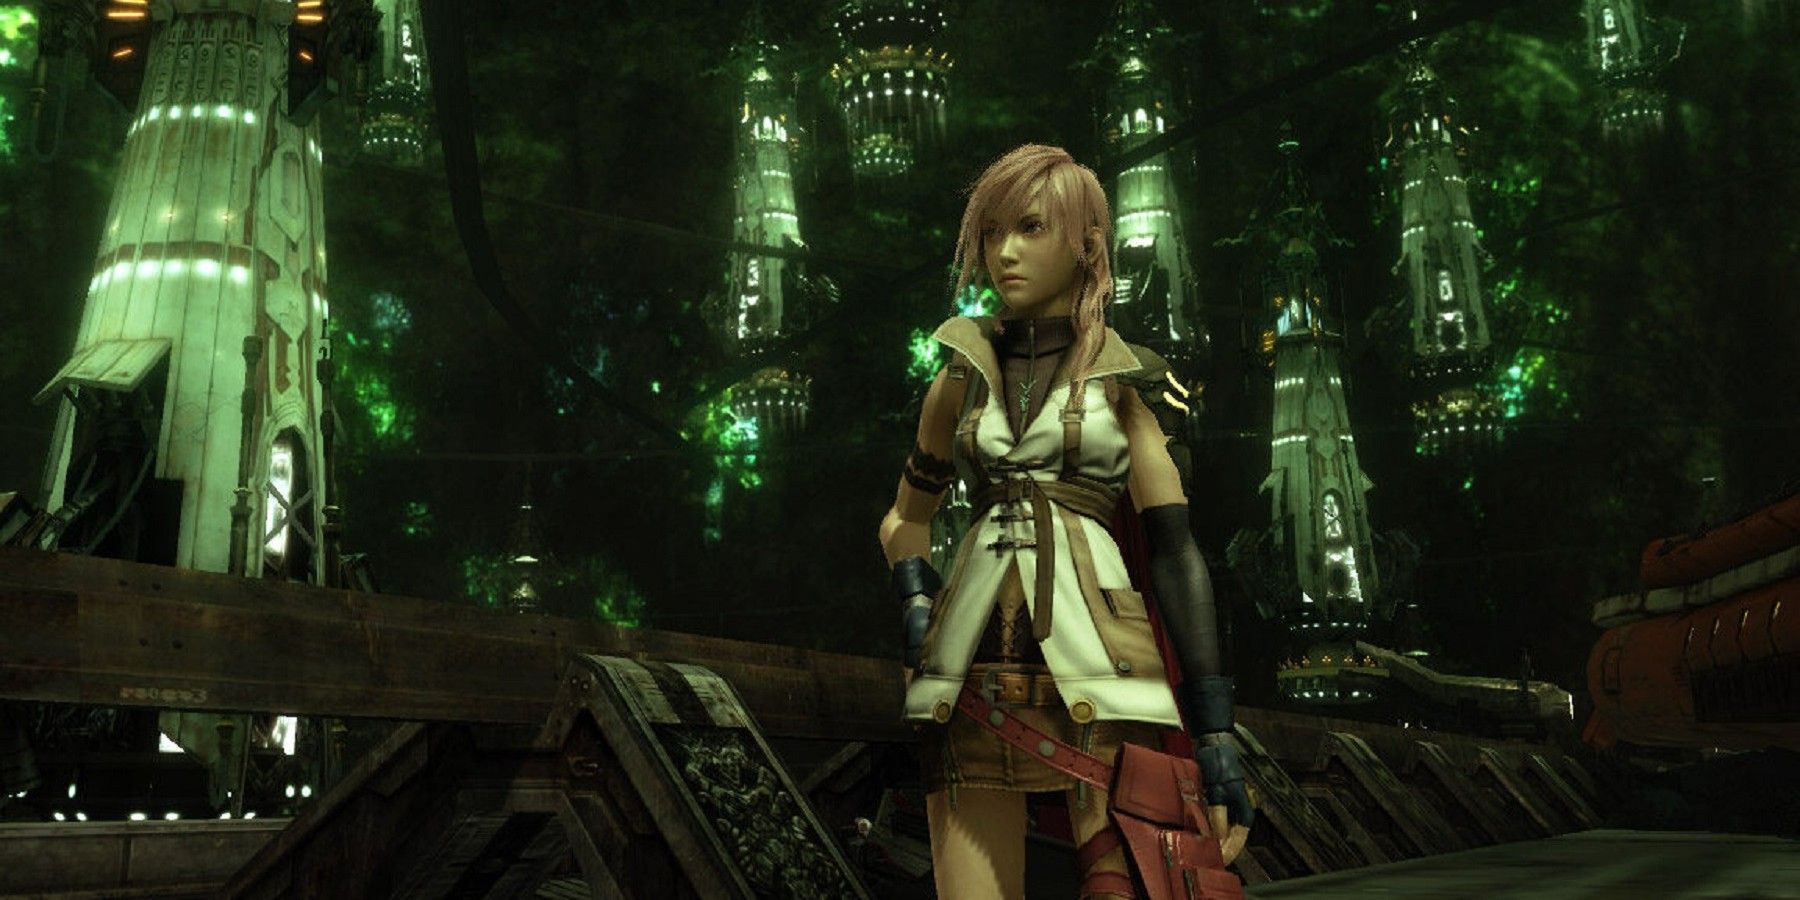 Final Fantasy 13, Lightining in A City At Night